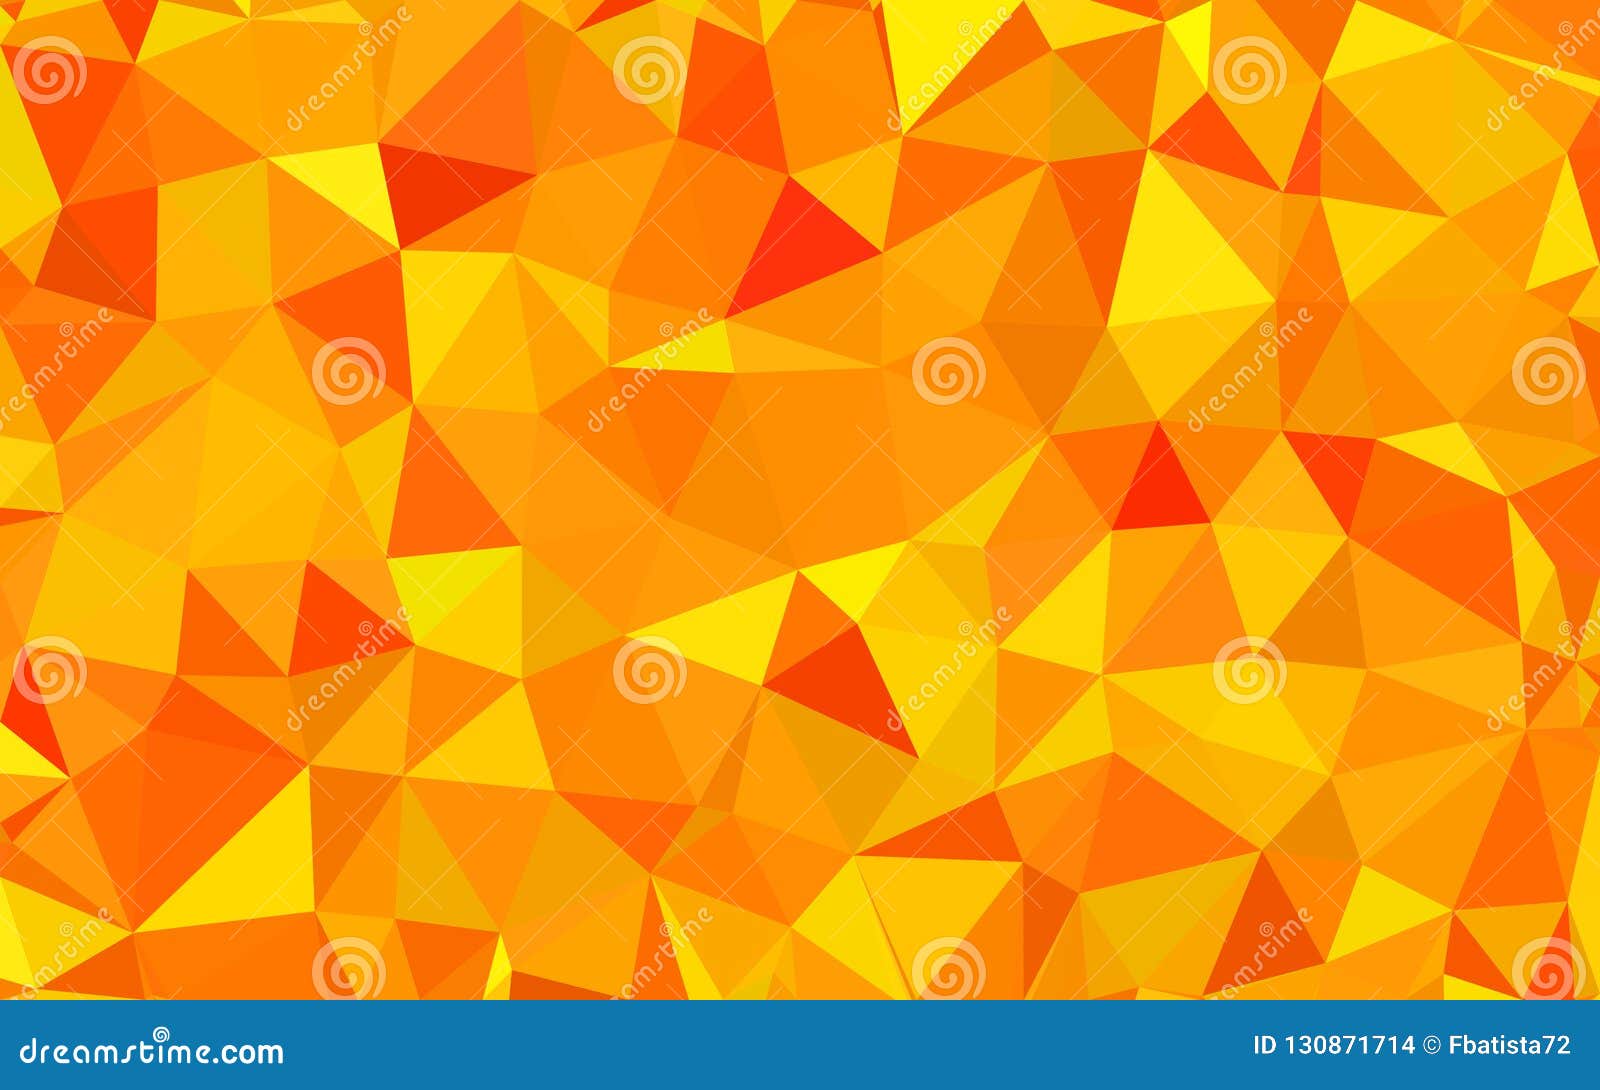 Dark Orange Triangular Low Poly Mosaic Pattern Background Vector